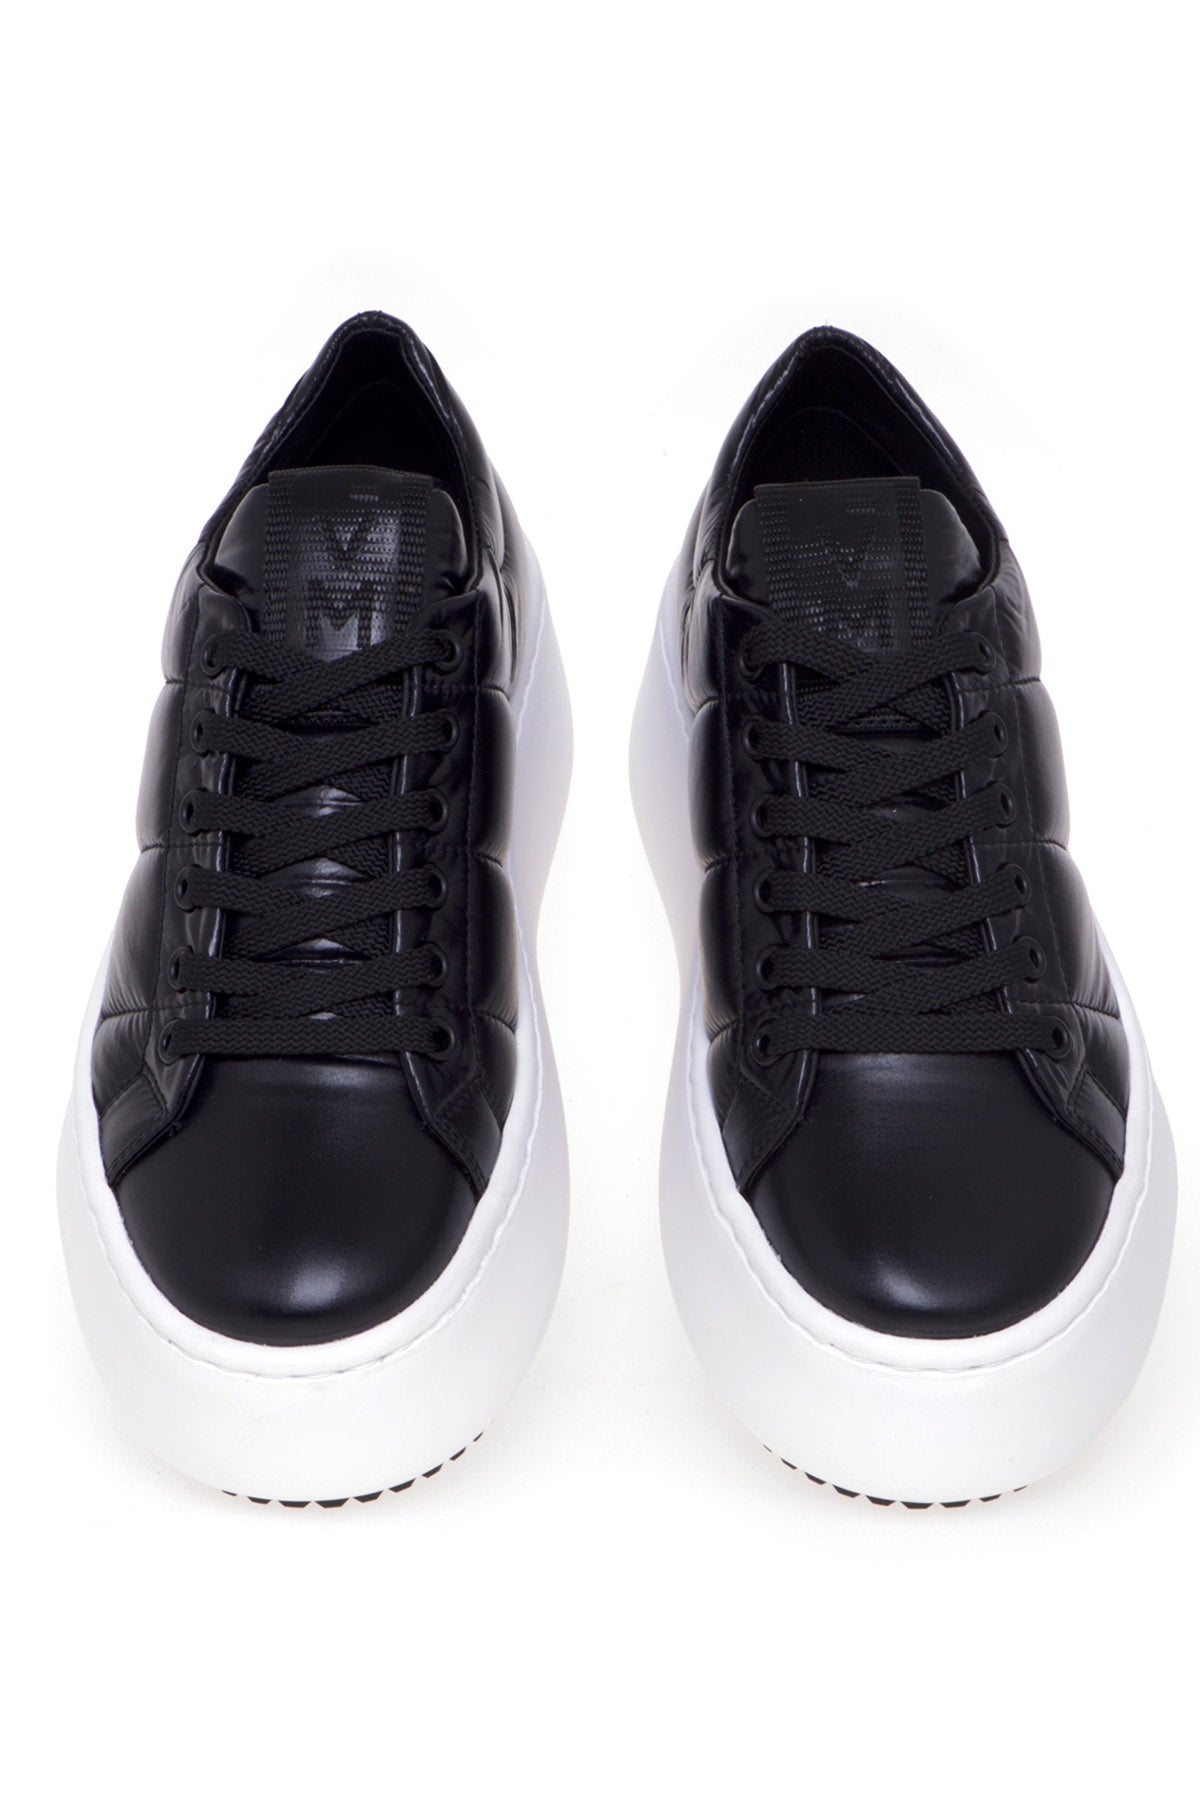 Vic Matie Dolgulu Deri Sneaker Ayakkabı-Libas Trendy Fashion Store